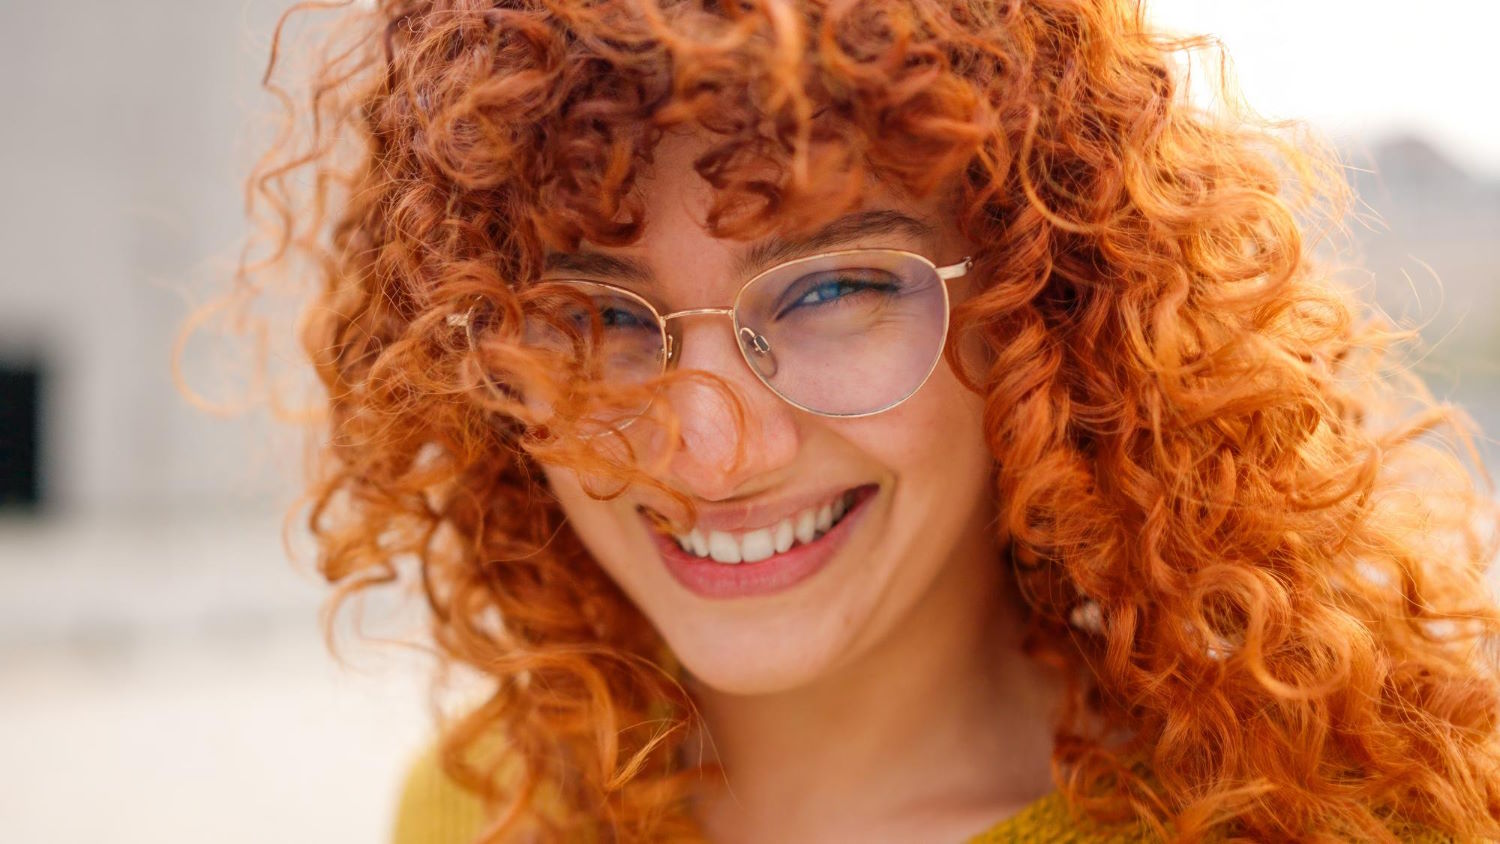 Błyskotliwe spojrzenie: Odkryj magię okularów Gucci dla kobiet